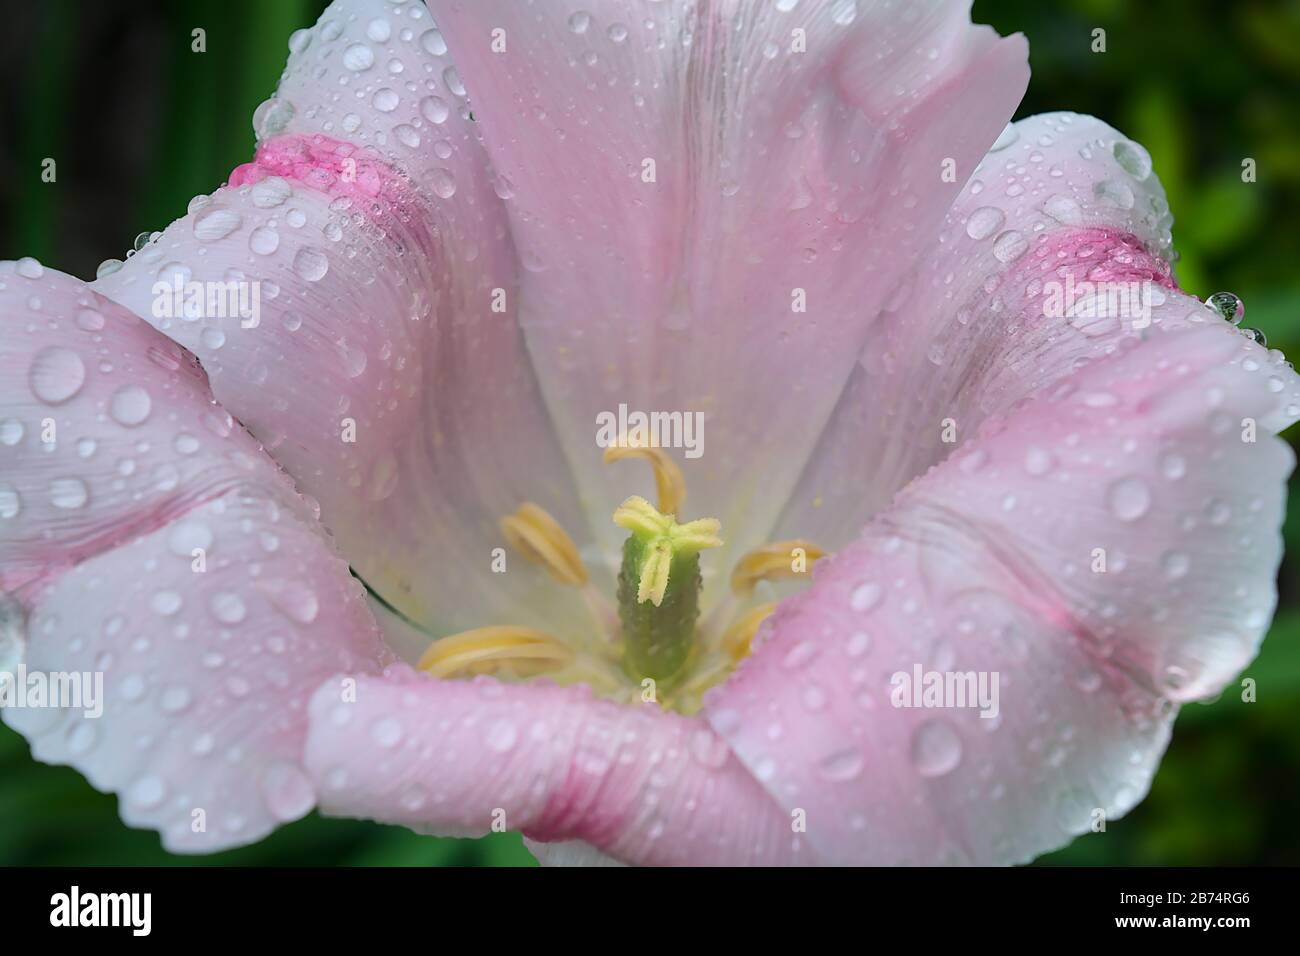 Une vue rapprochée d'un Lillium 'Stargazer' Lily qui est un Lily de la variété orientale, parfois mal appelé un rubrum Lillies. Toxique Banque D'Images